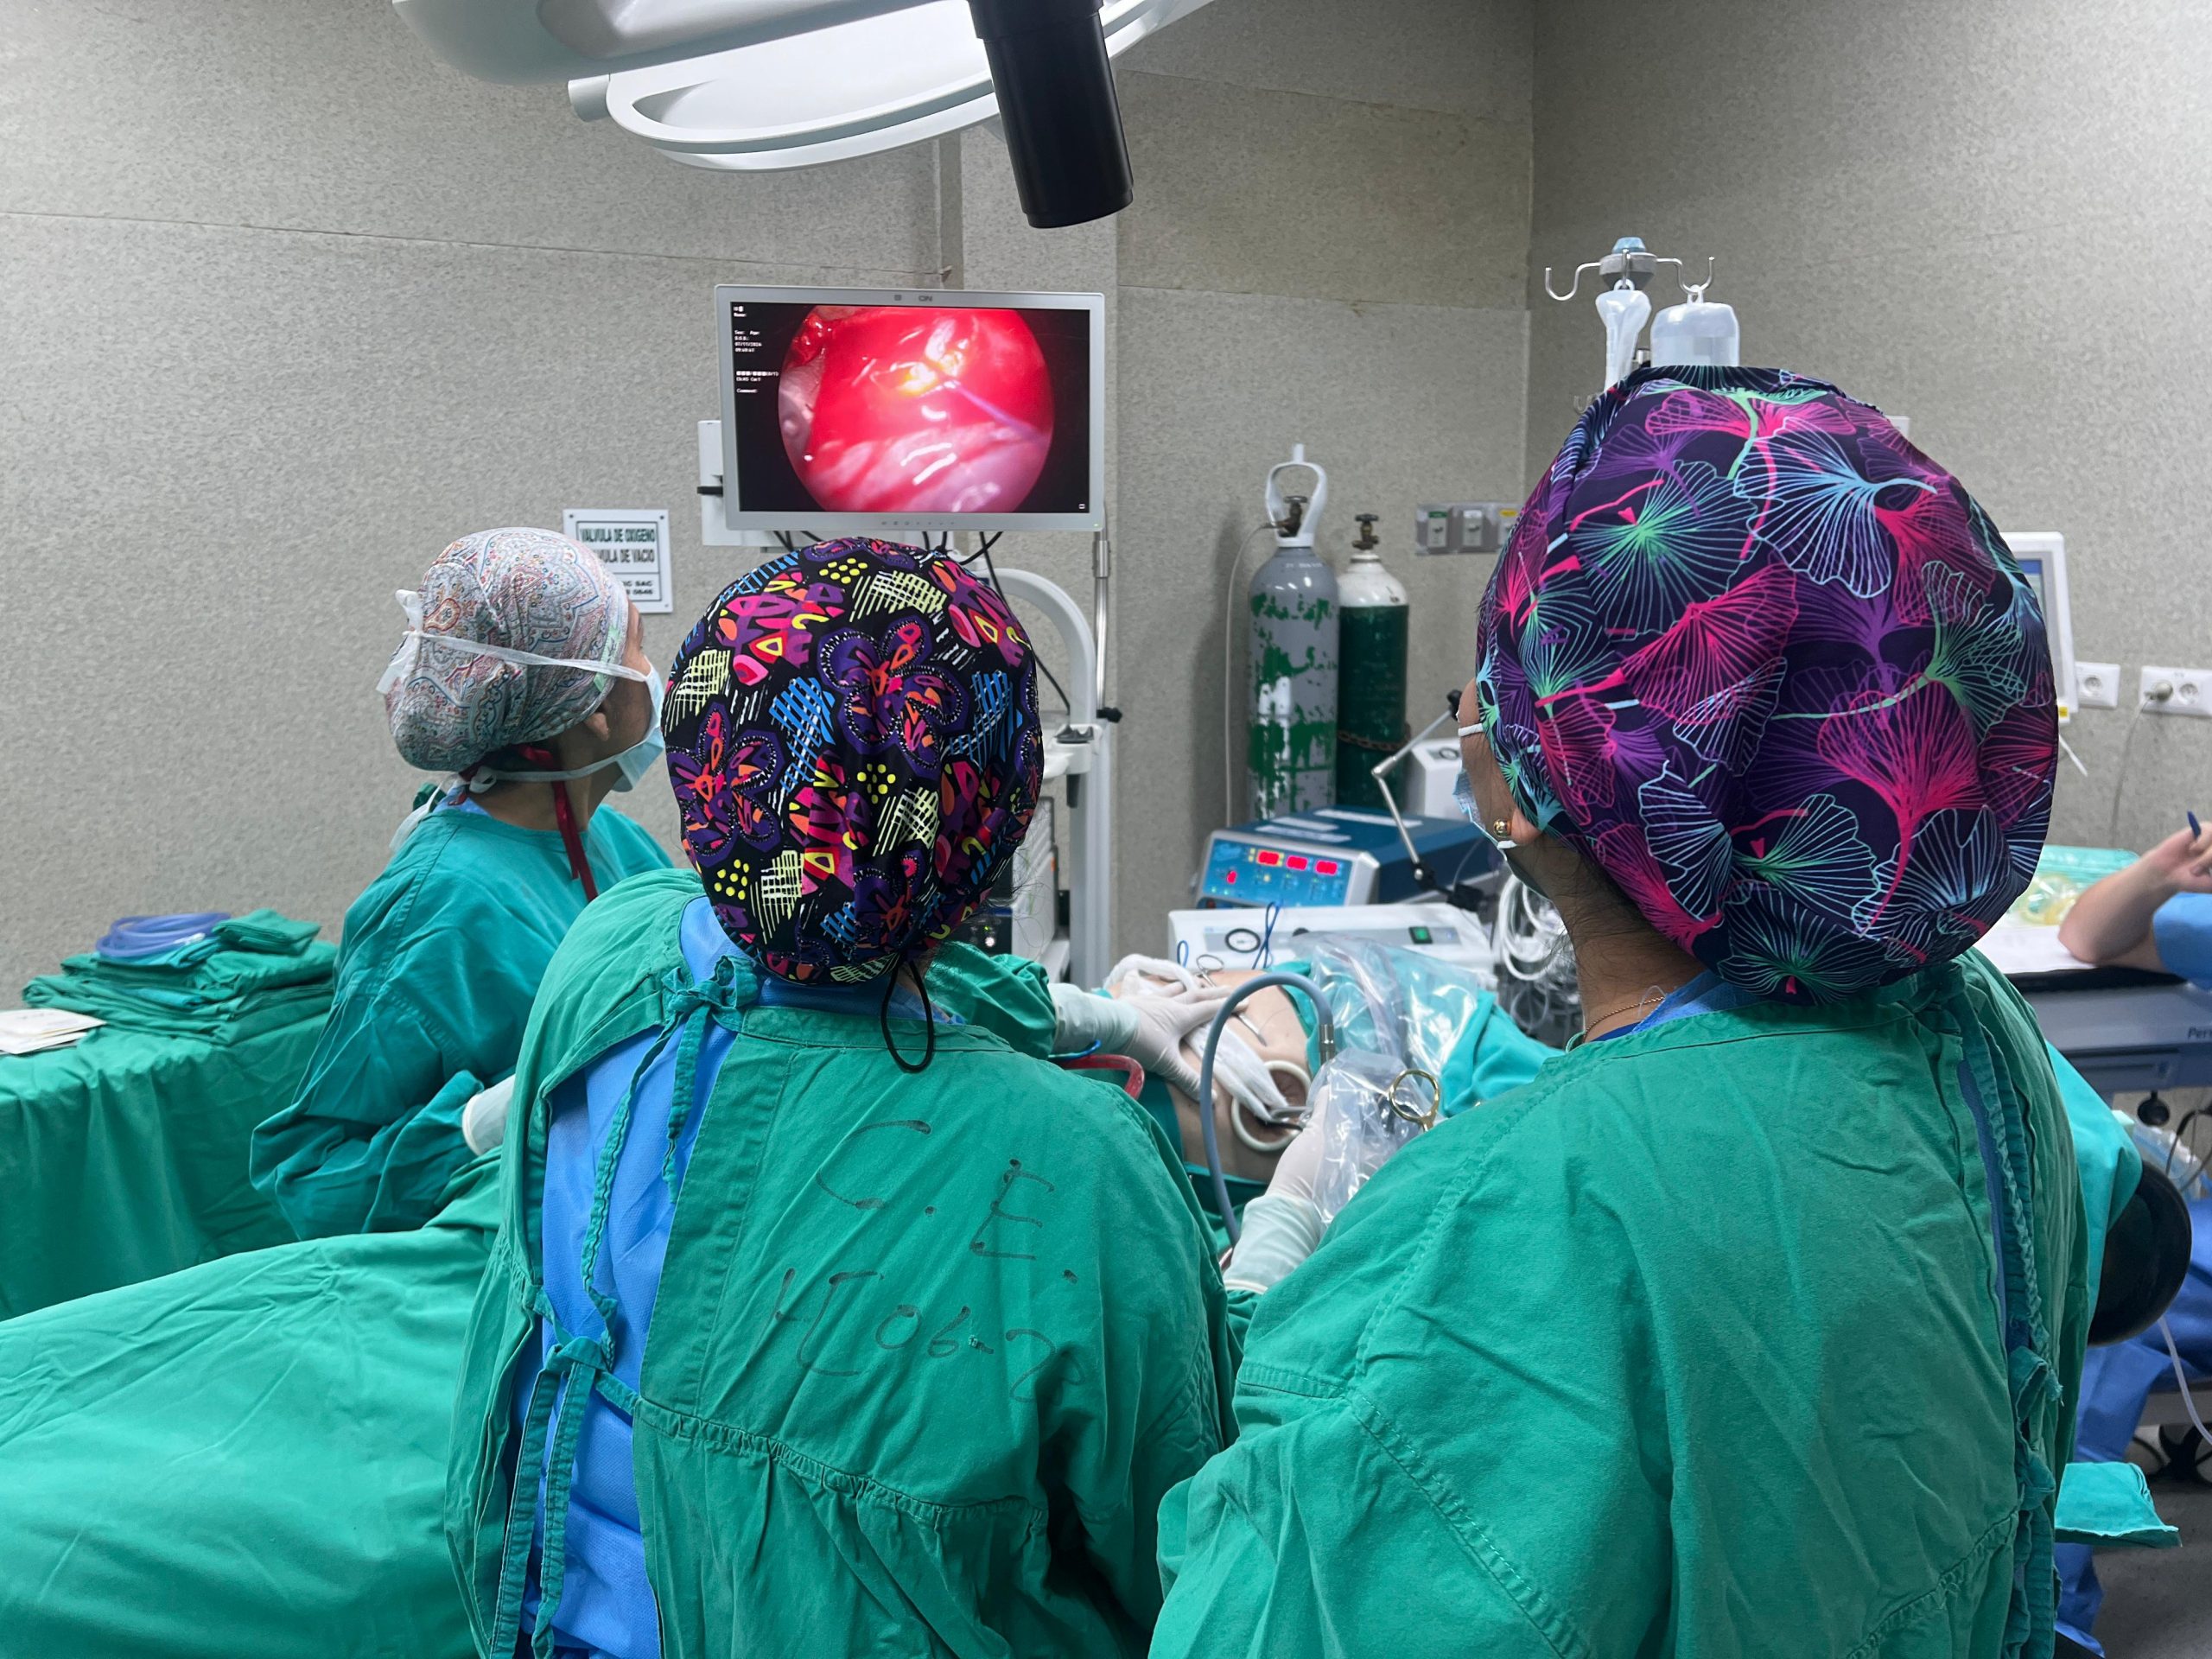 El Hospital Carrión realiza su primera cirugía toracoscópica uniportal en paciente de 80 años